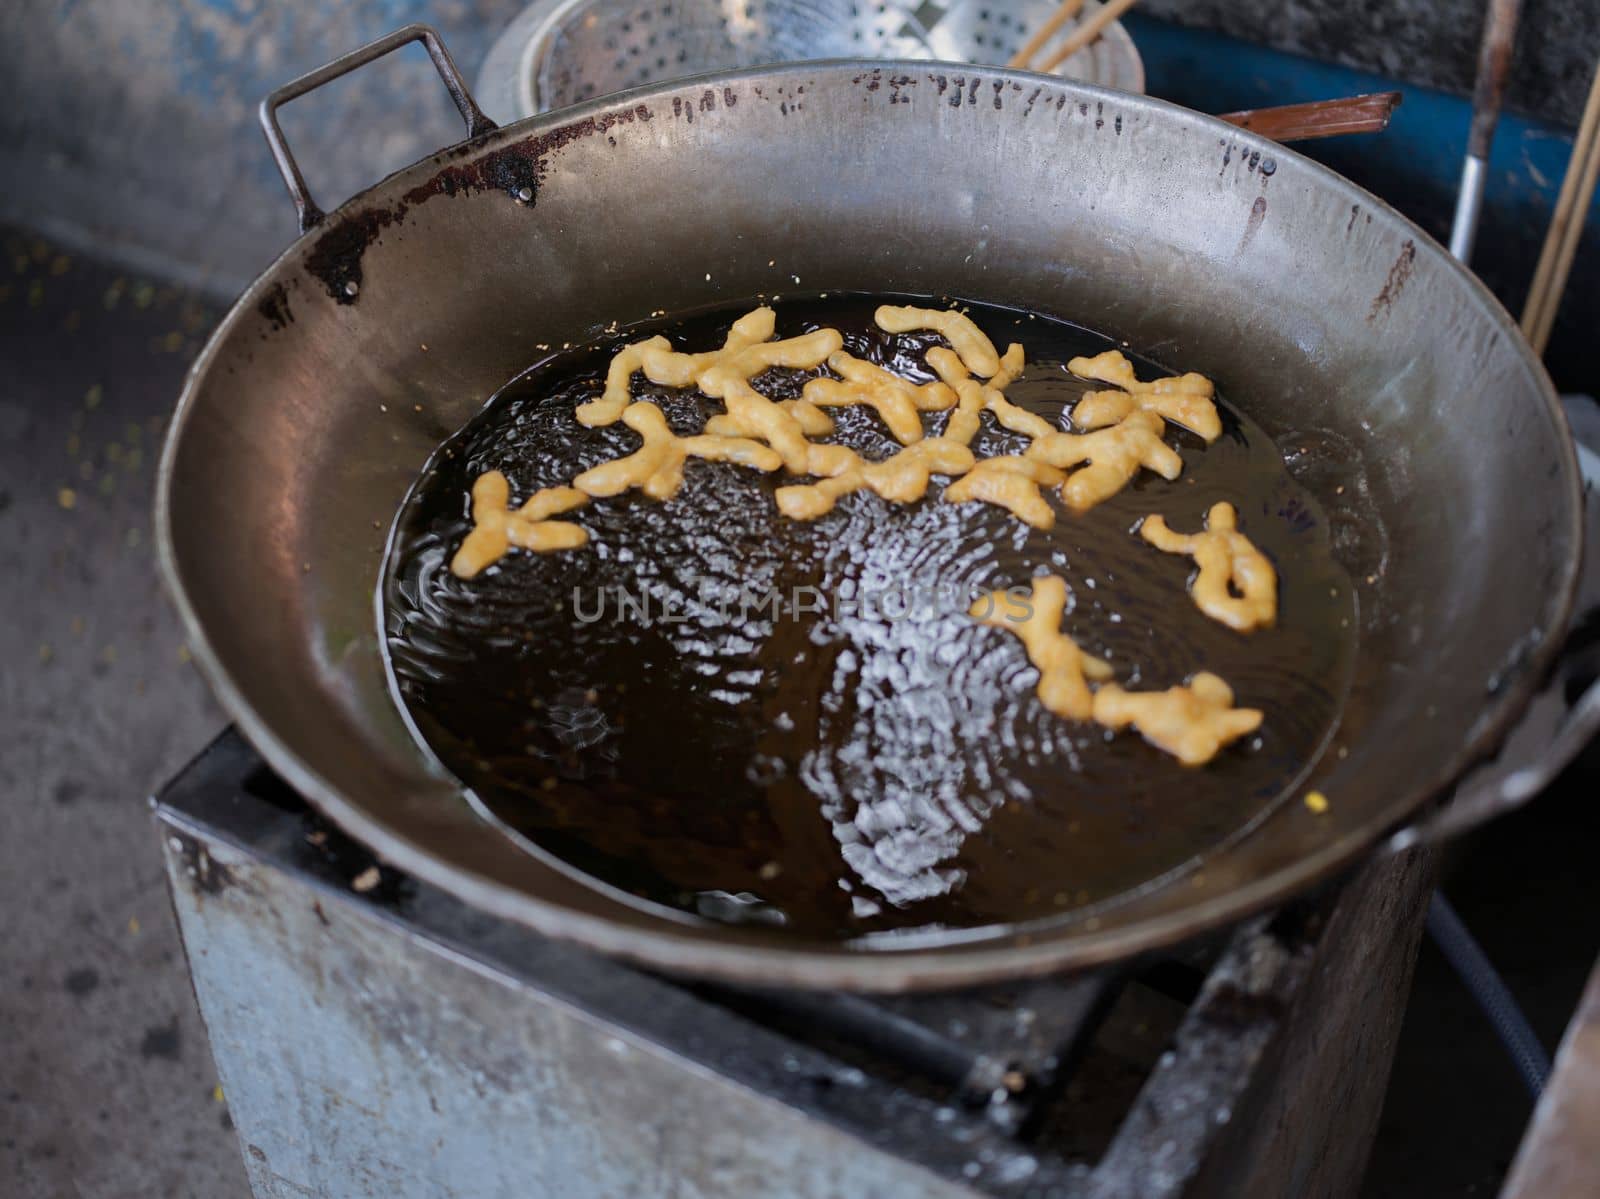 Die cut of Deep fried Chinese Doughnut in an big oil pan by Hepjam